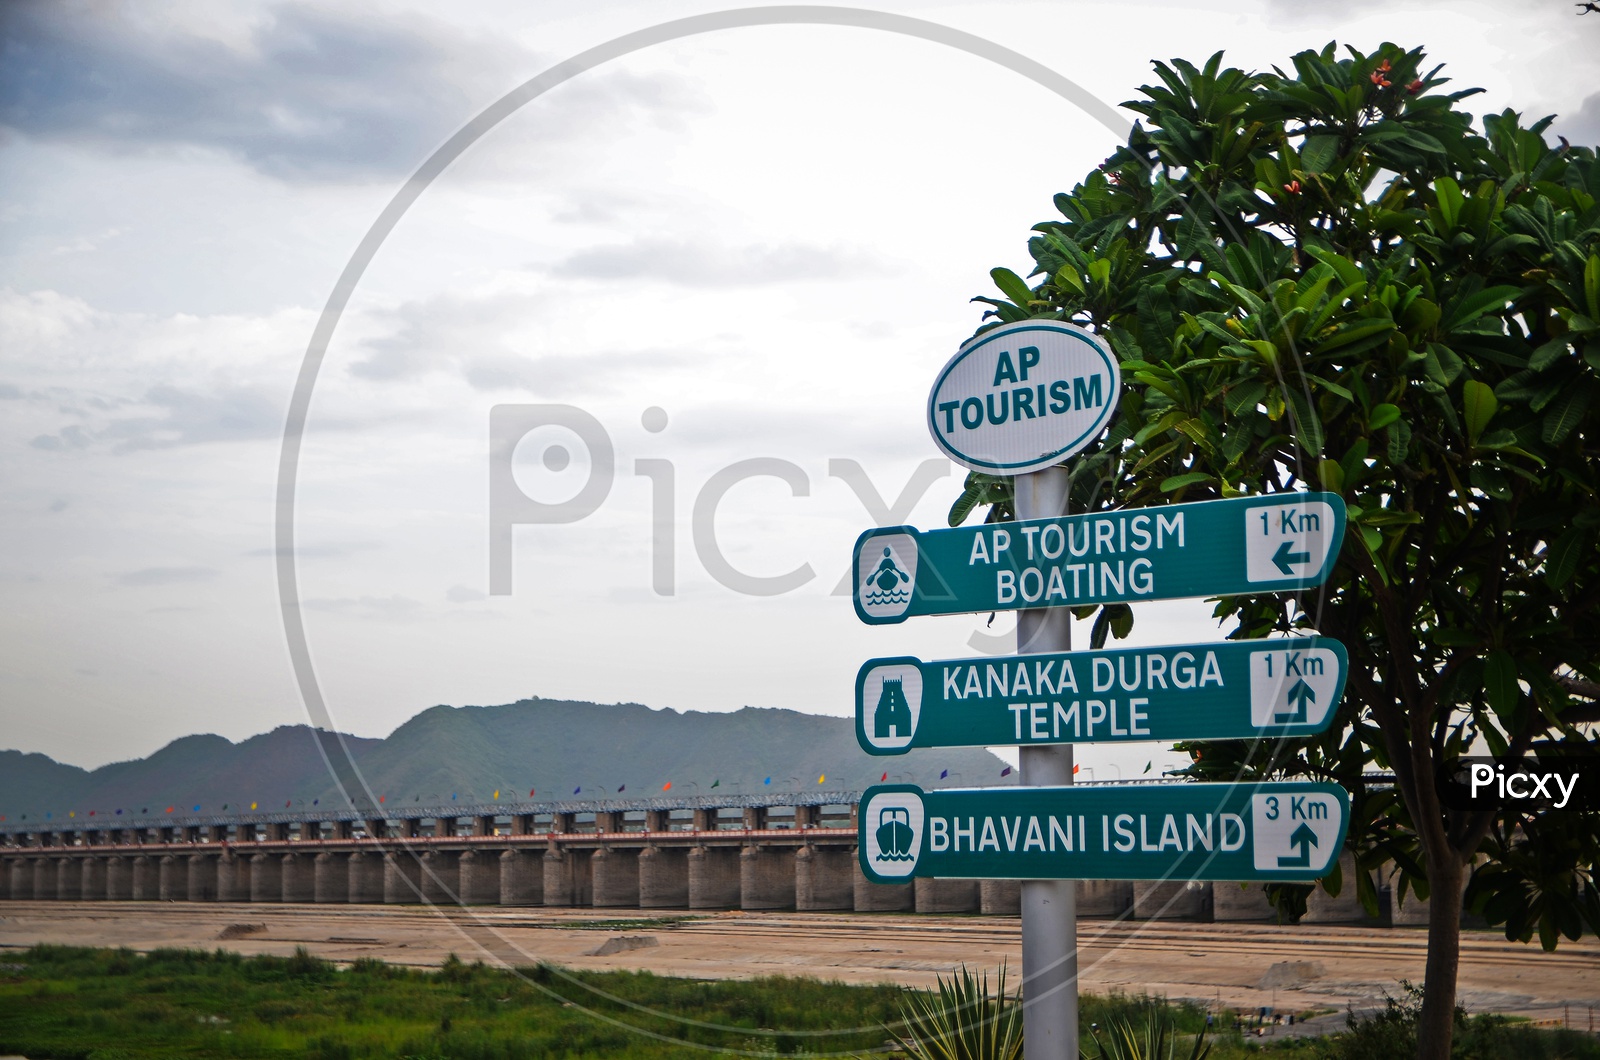 AP tourism, Prakasam Barrage